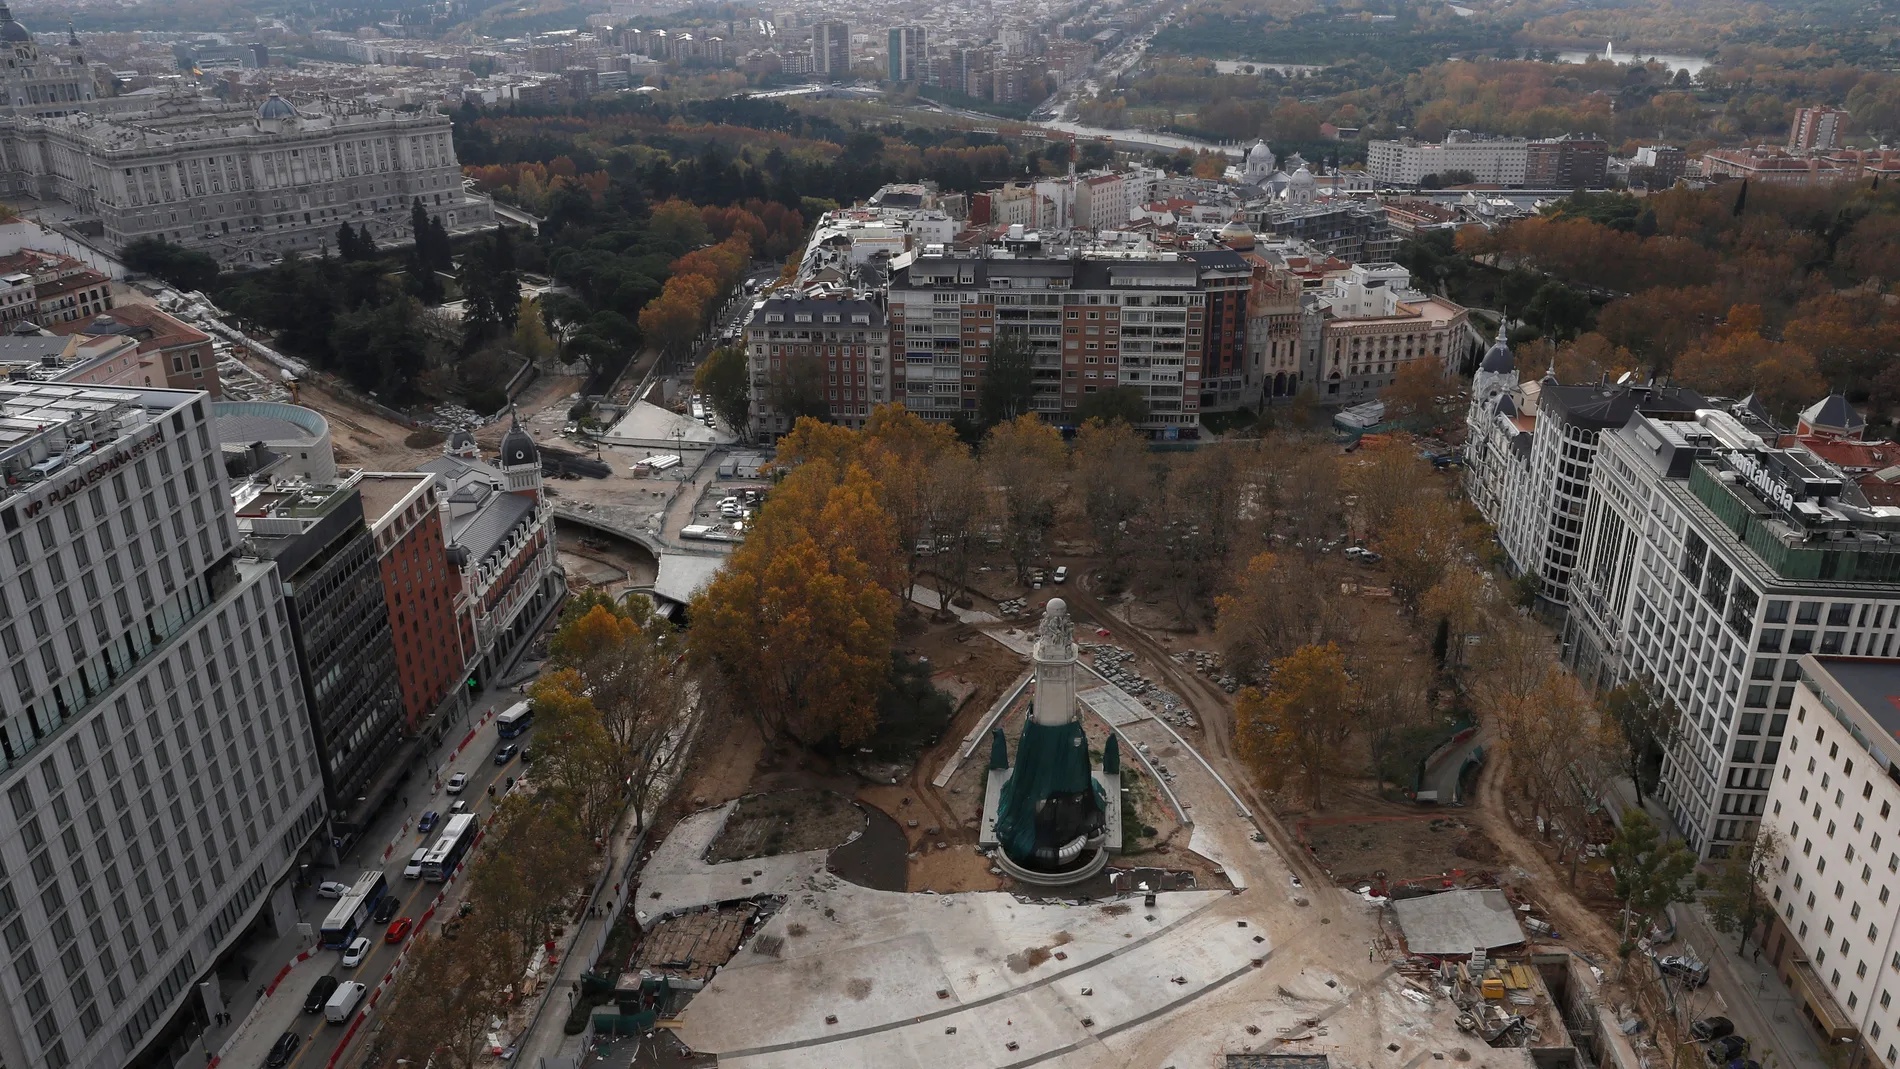 Vista aérea de las obras de remodelación de la madrileña Plaza de España